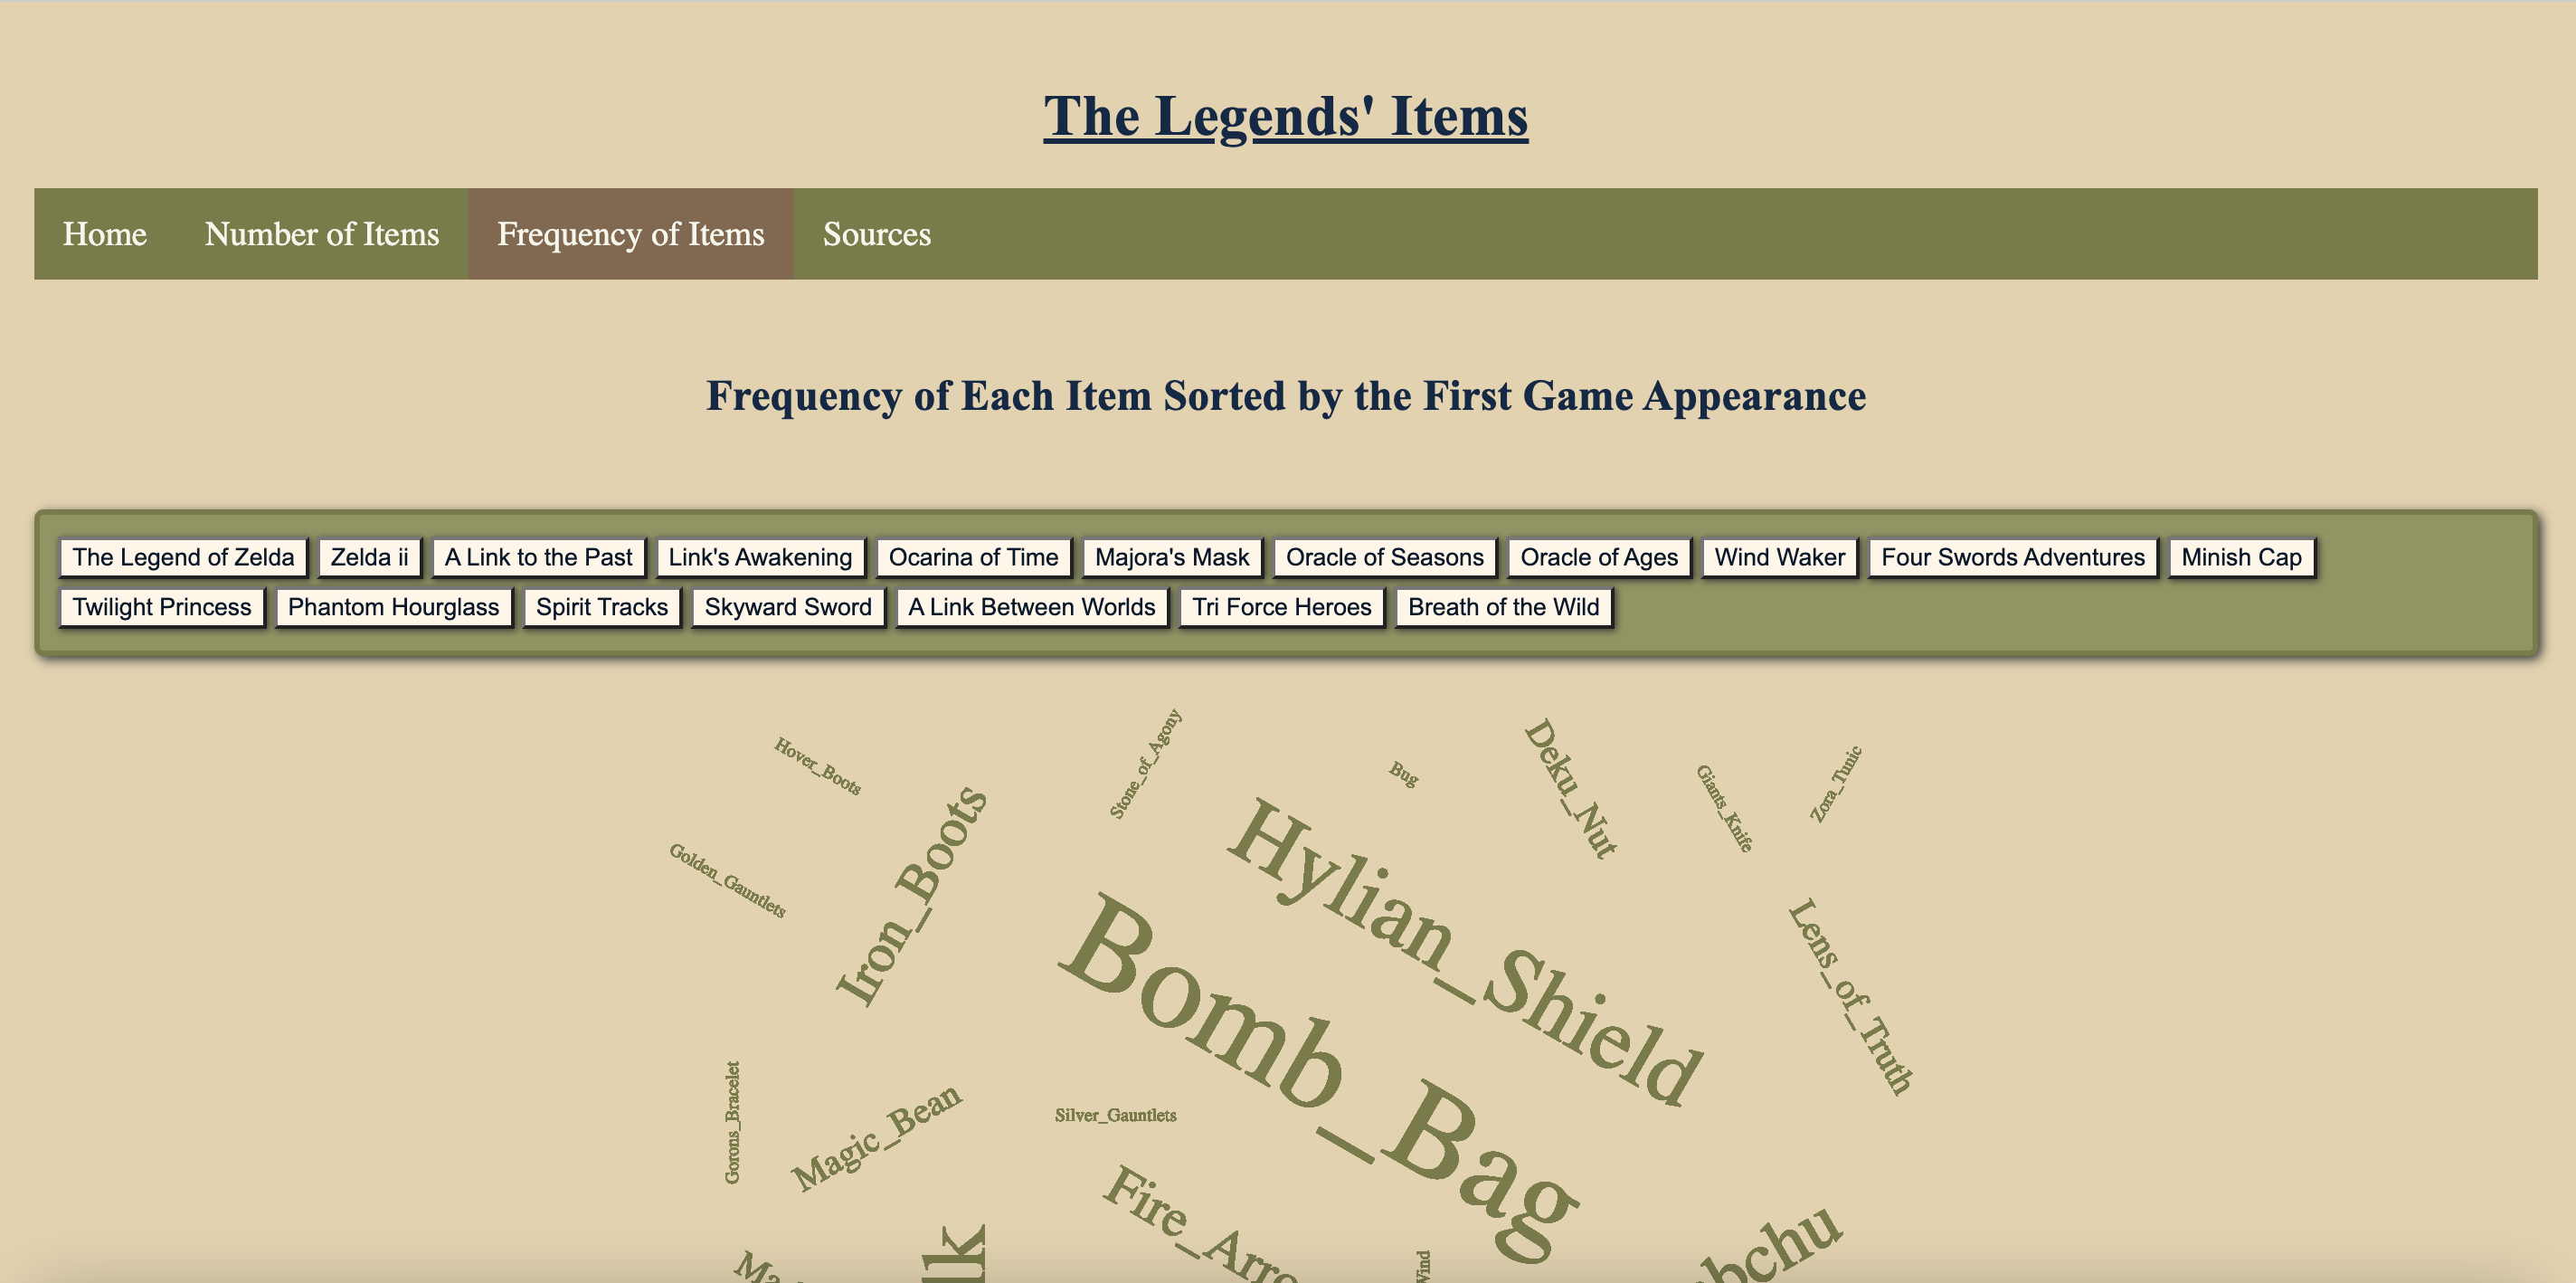 A screenshot from The Legends' Items website